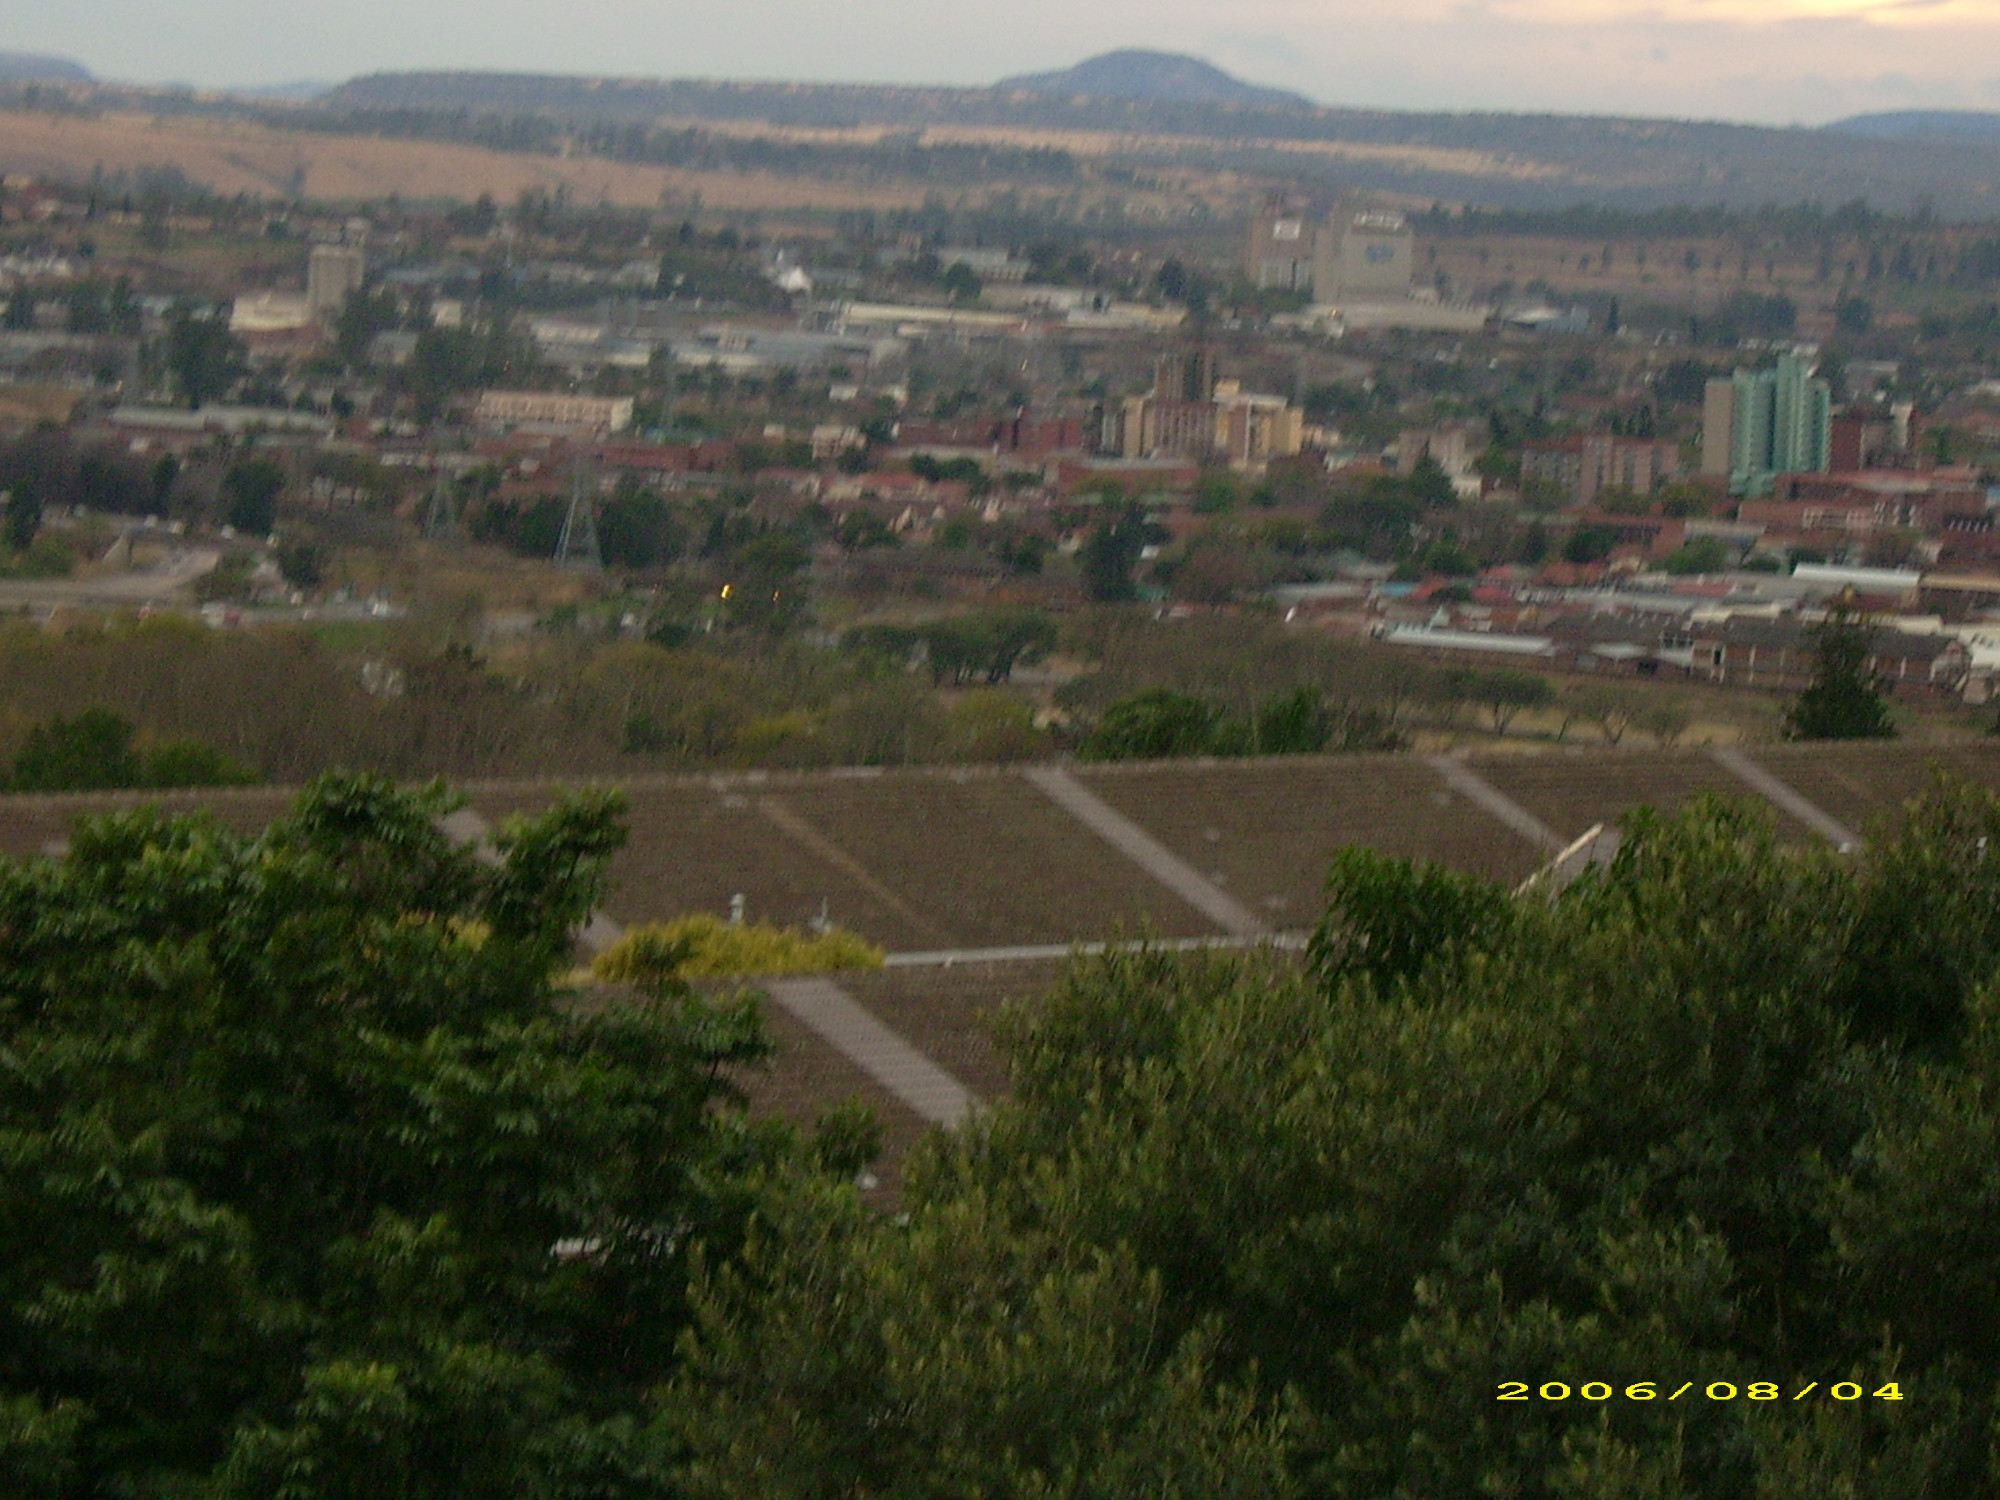 Pietermaritzburg